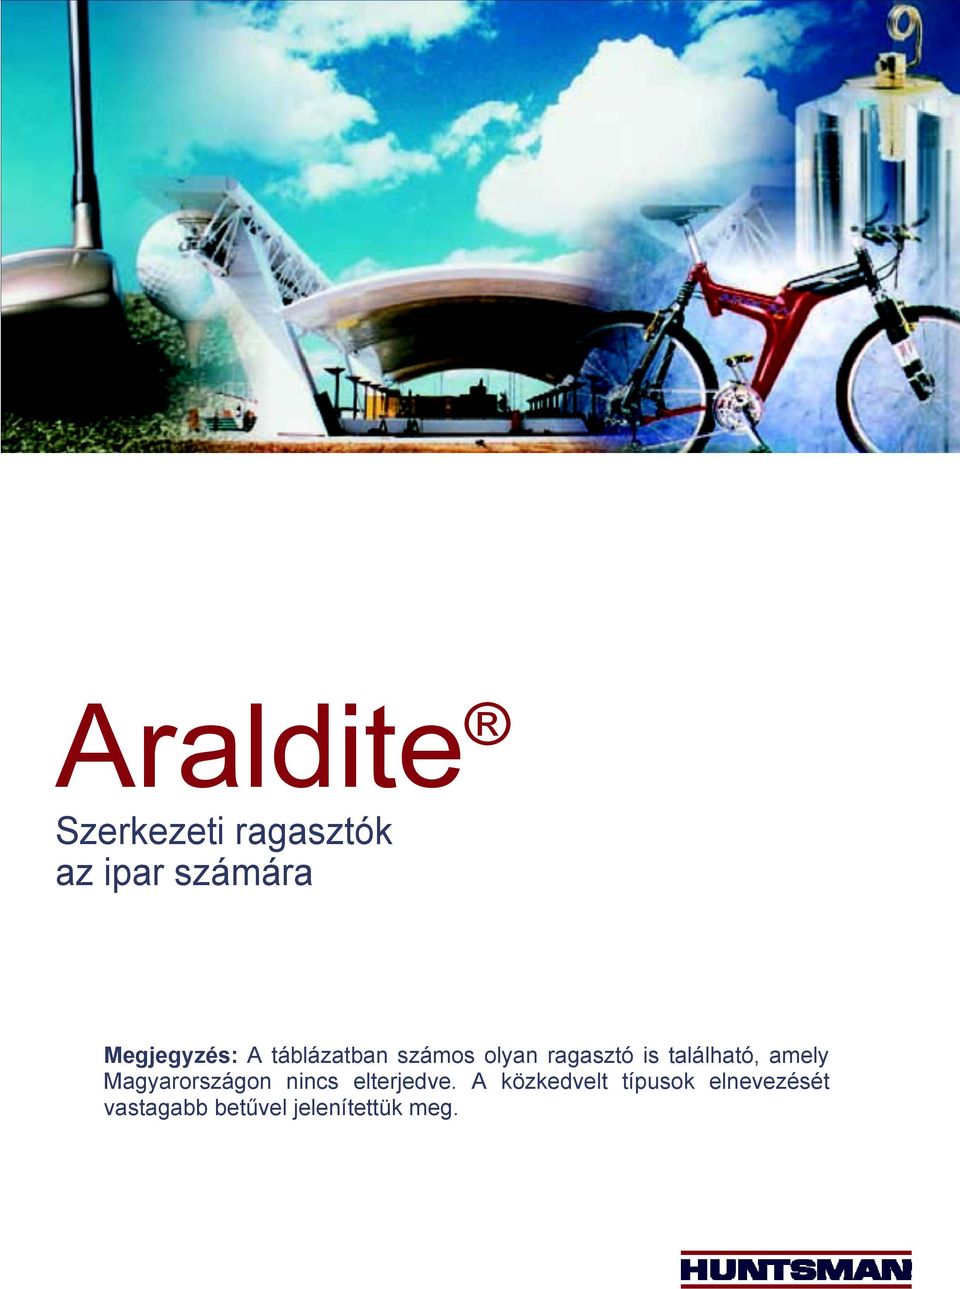 Araldite. Szerkezeti ragasztók az ipar számára - PDF Ingyenes letöltés